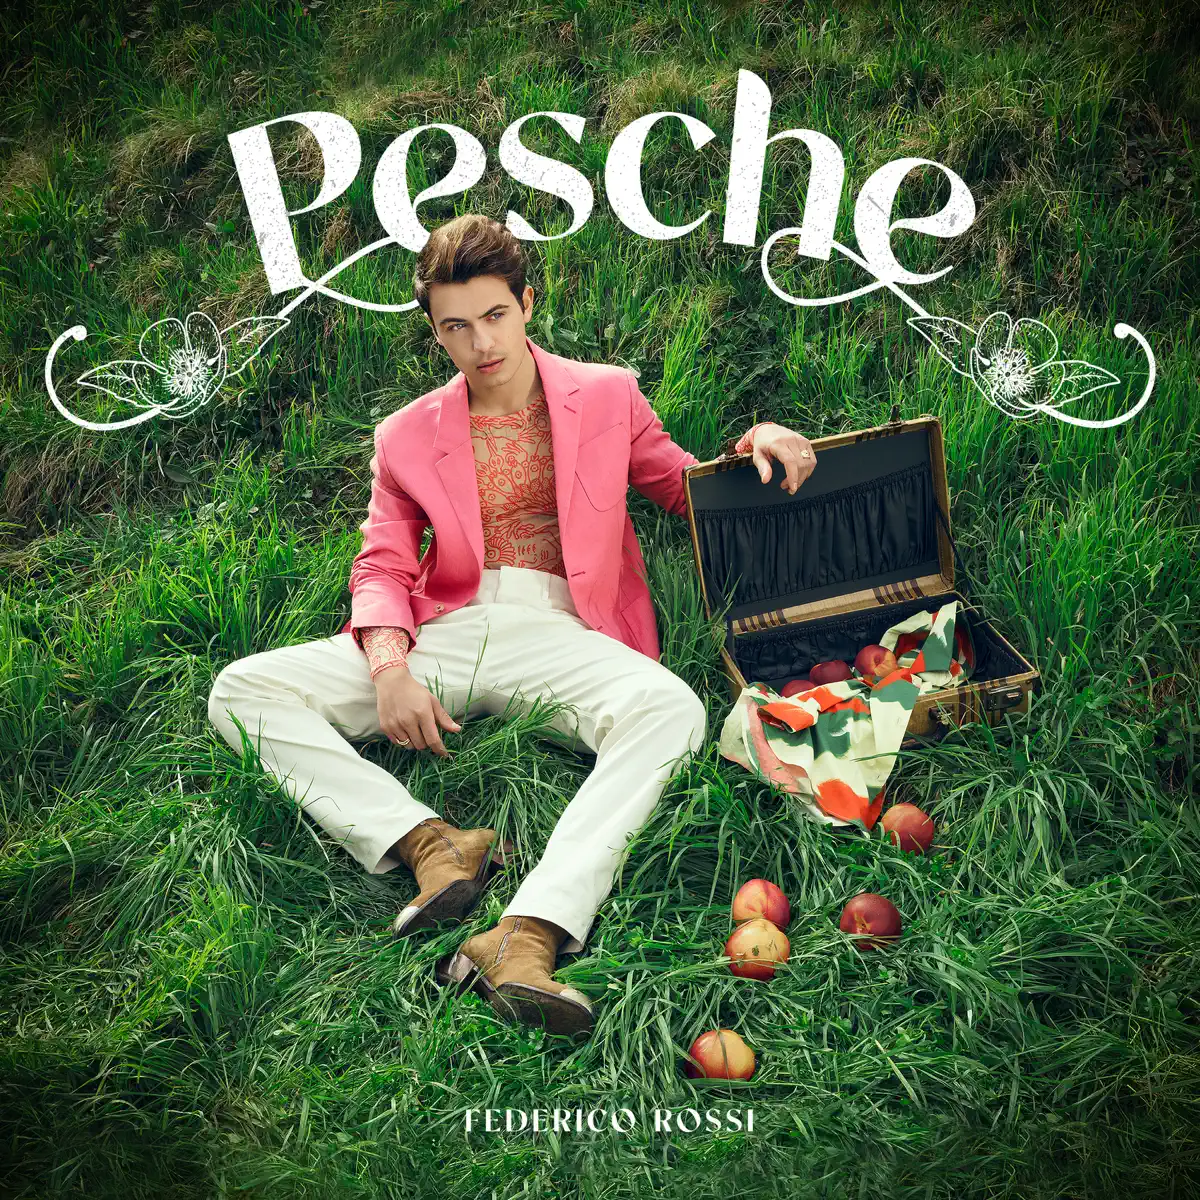 Federico Rossi - Pesche - Single (2021) [iTunes Plus AAC M4A]-新房子